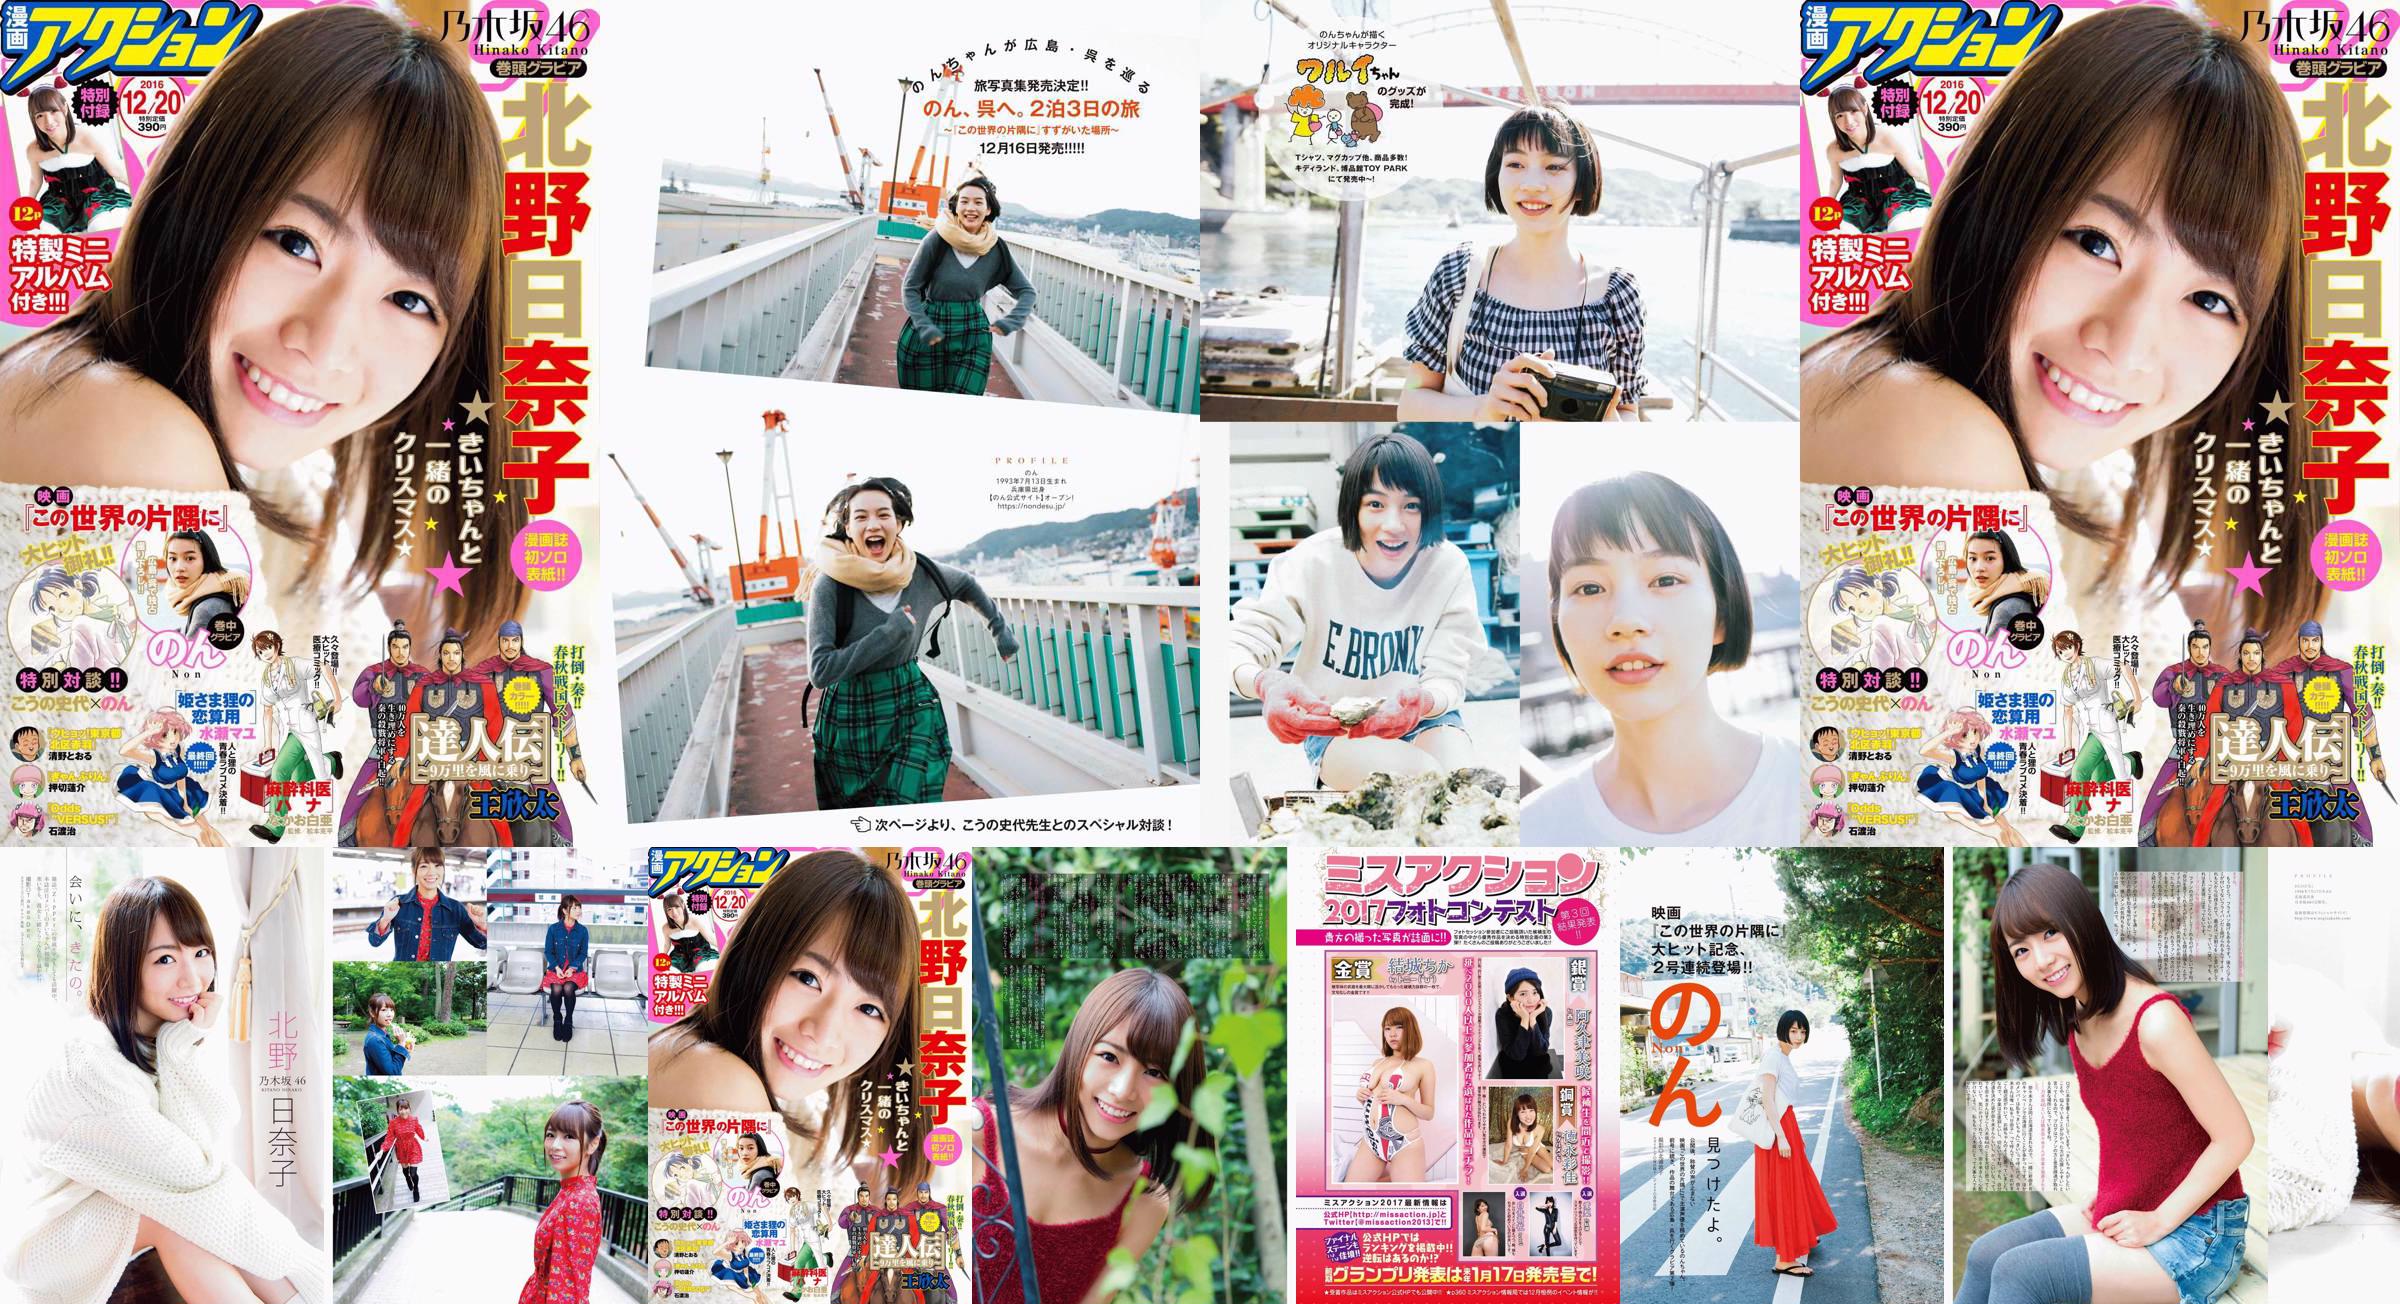 [Manga Action] Kitano Hinako の ん Tạp chí ảnh số 24 năm 2016 No.365350 Trang 1